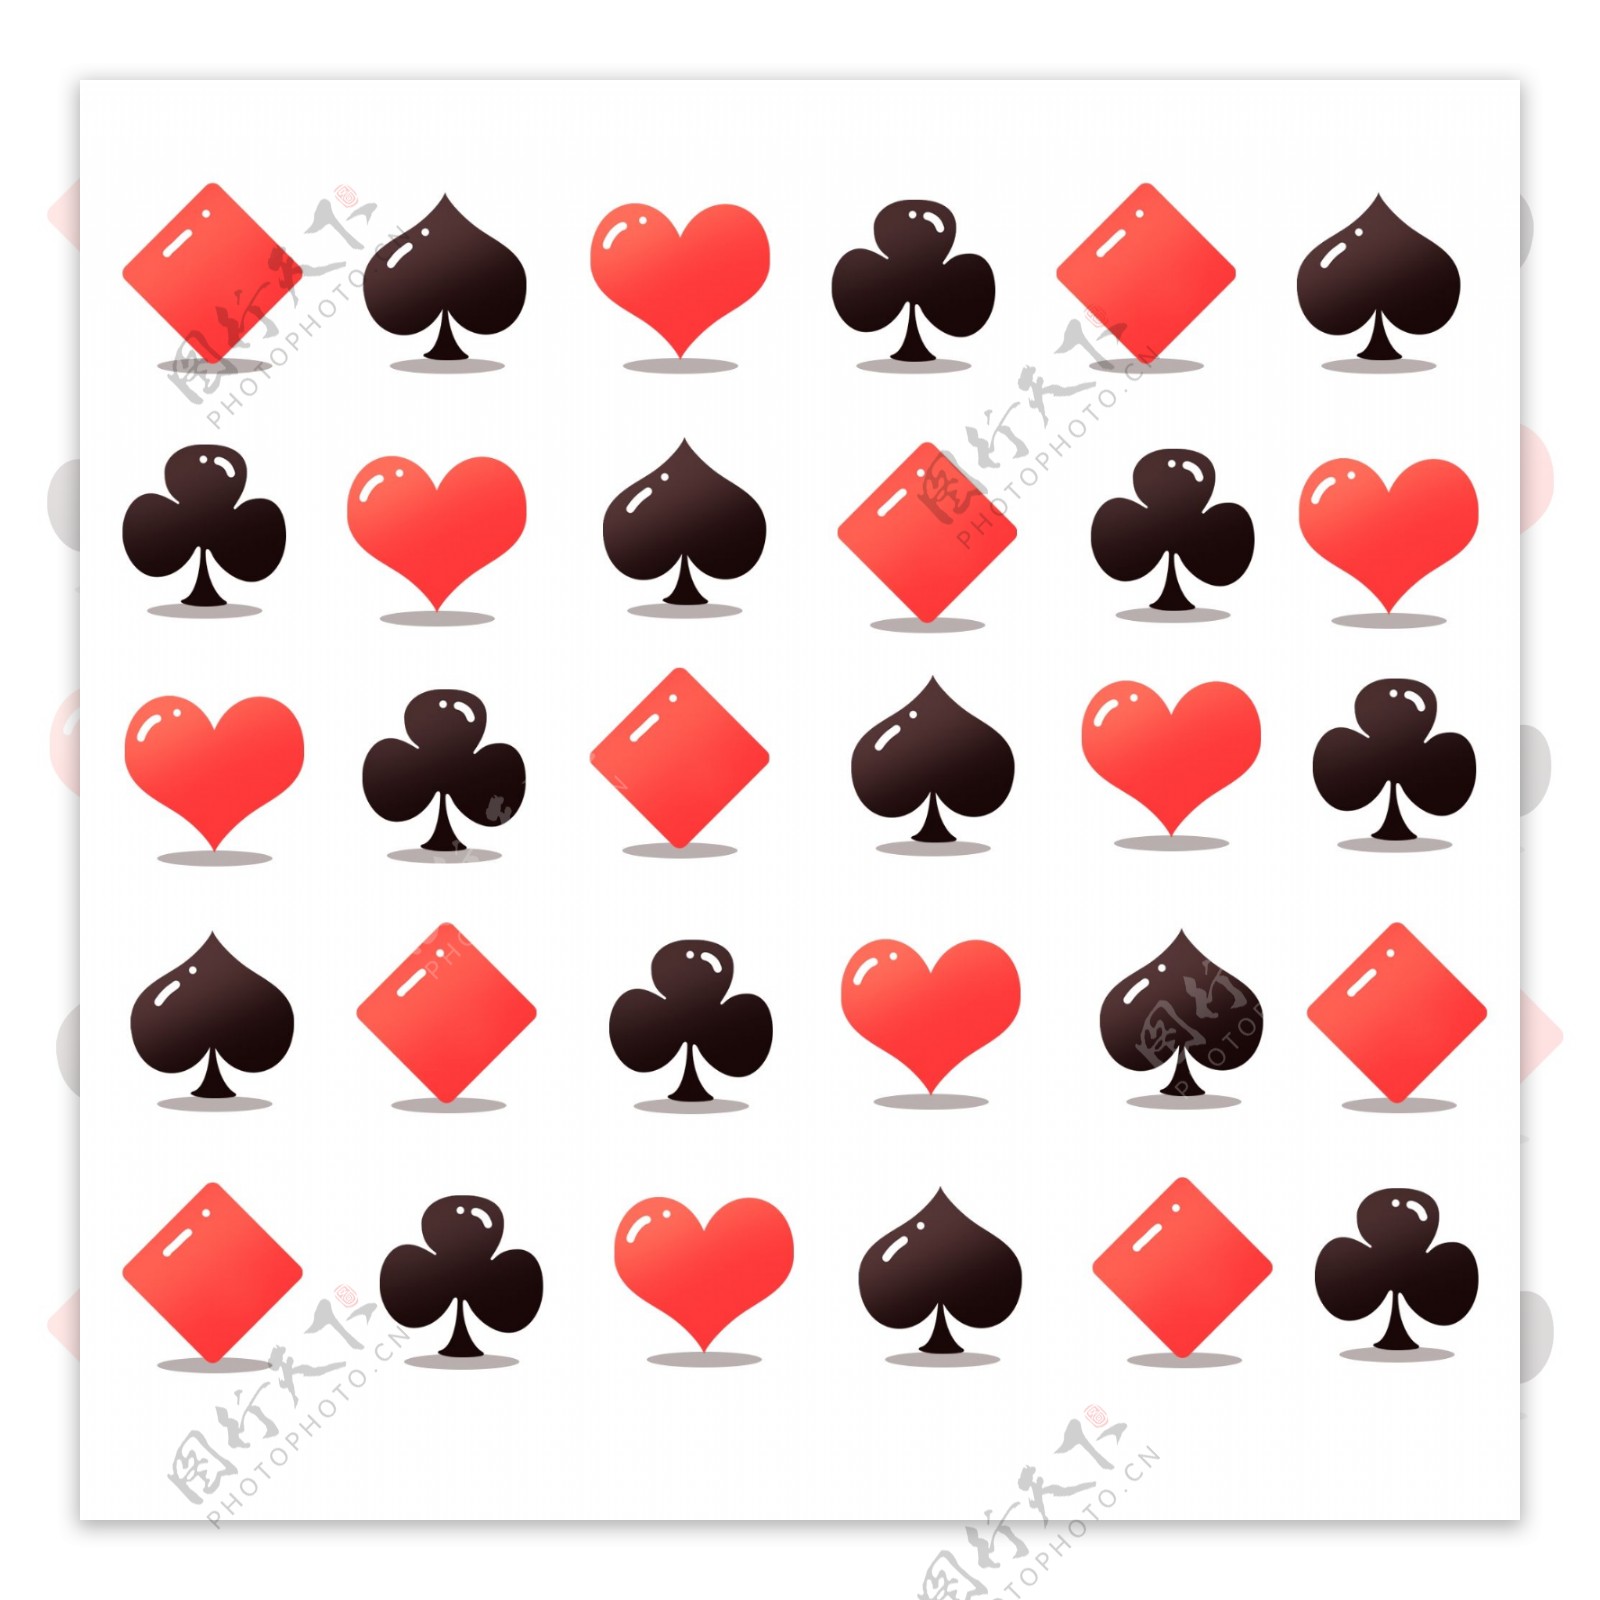 平铺立体扑克牌图标下载